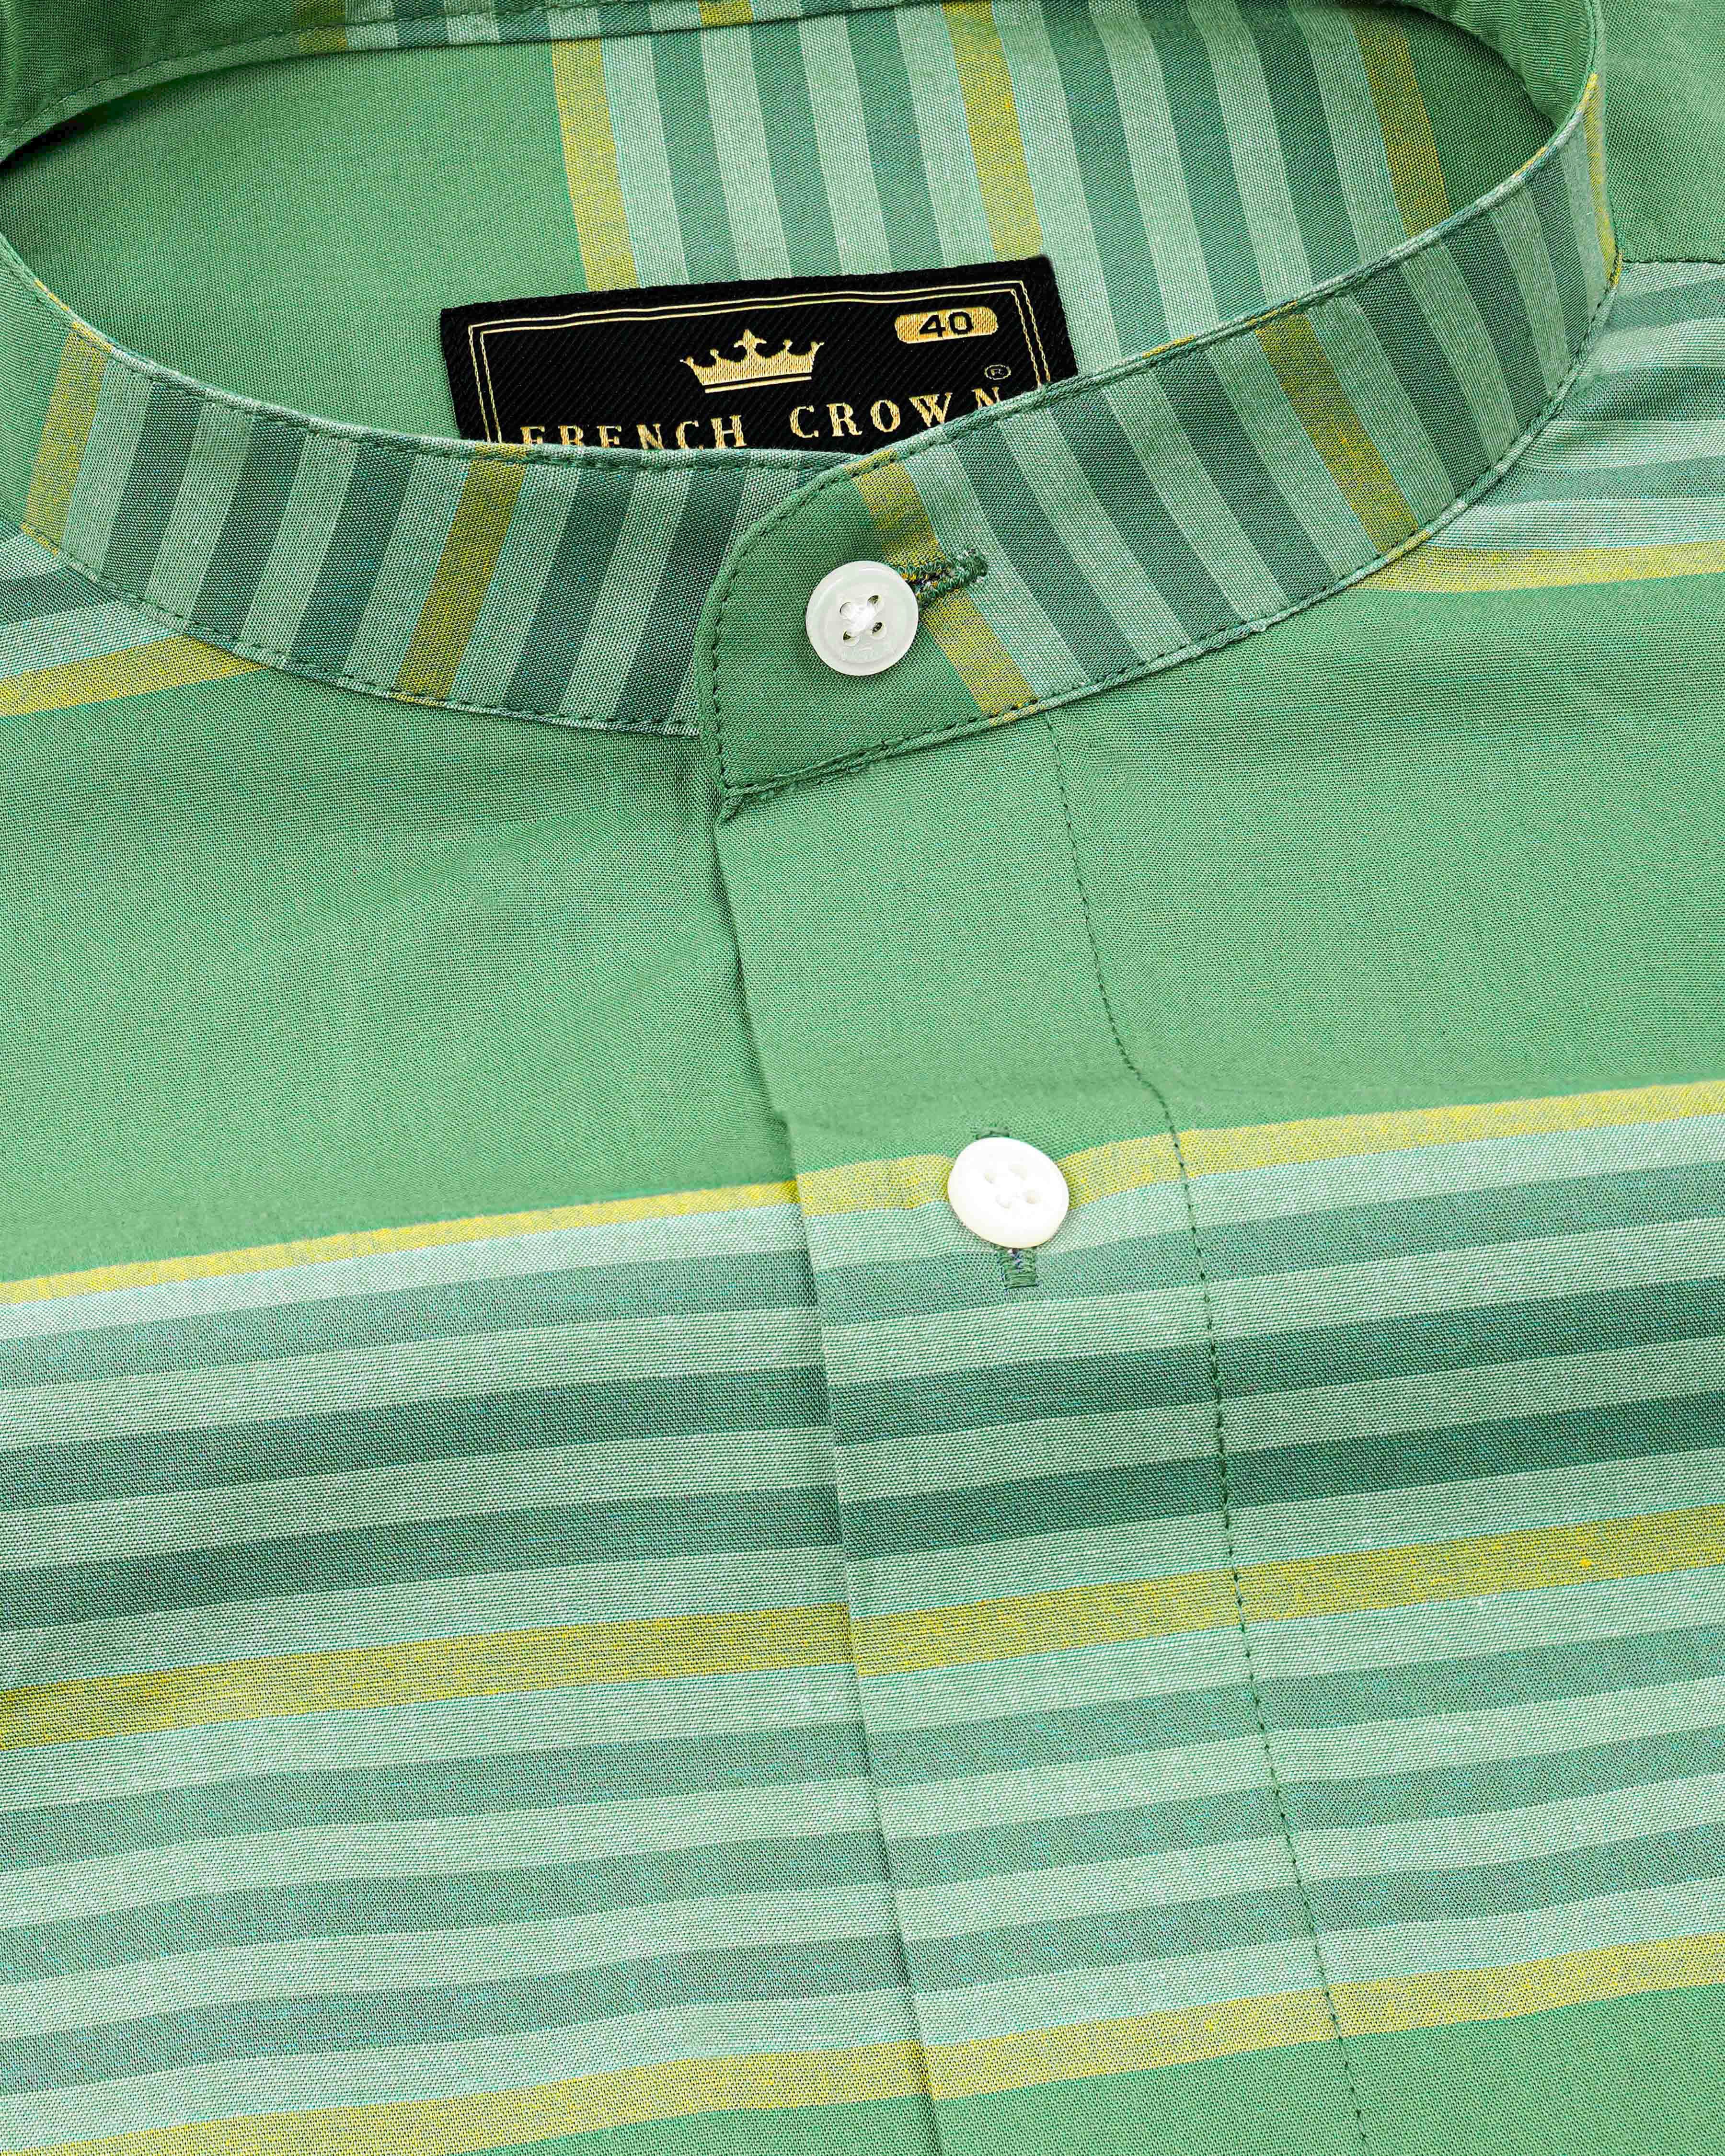 Lichen Green with Laser Yellow Striped Premium Cotton Shirt